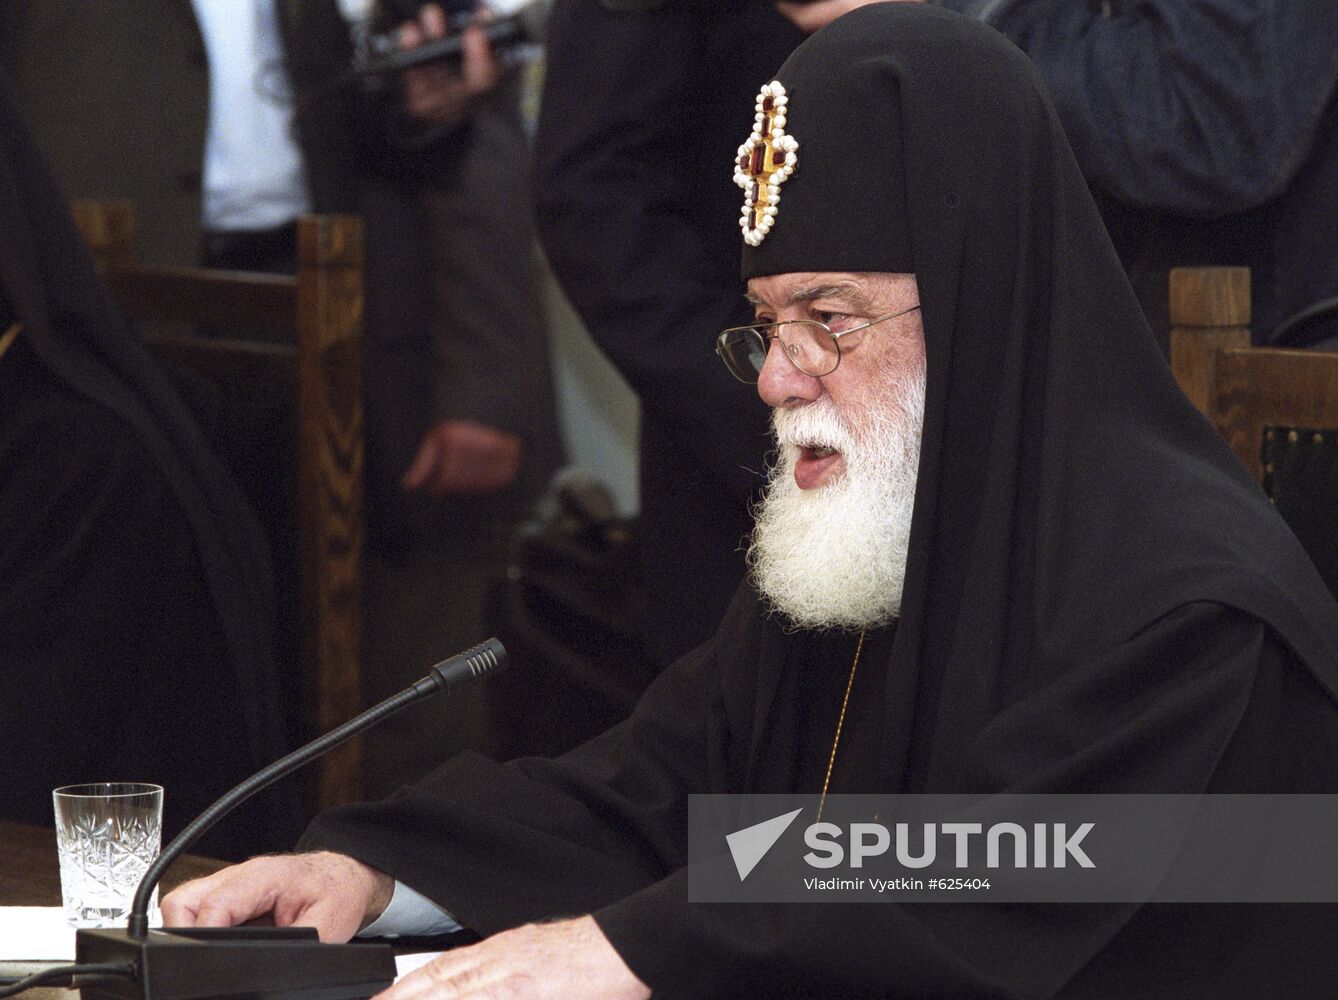 Patriarch Catholicos Ilia II of All Georgia